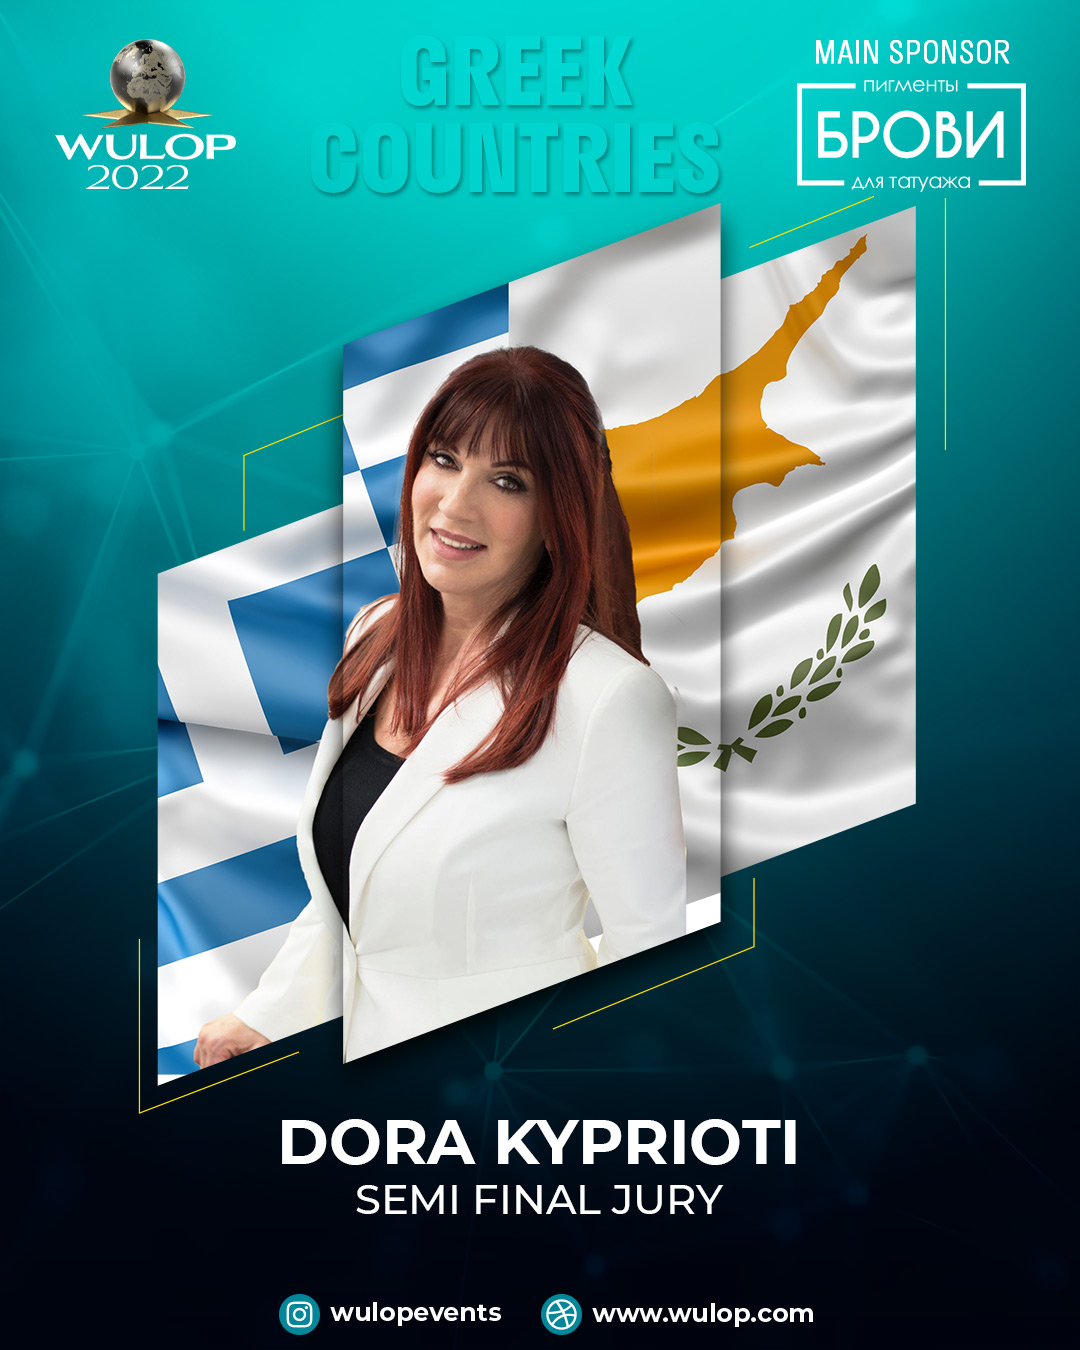 Dora Kyprioti